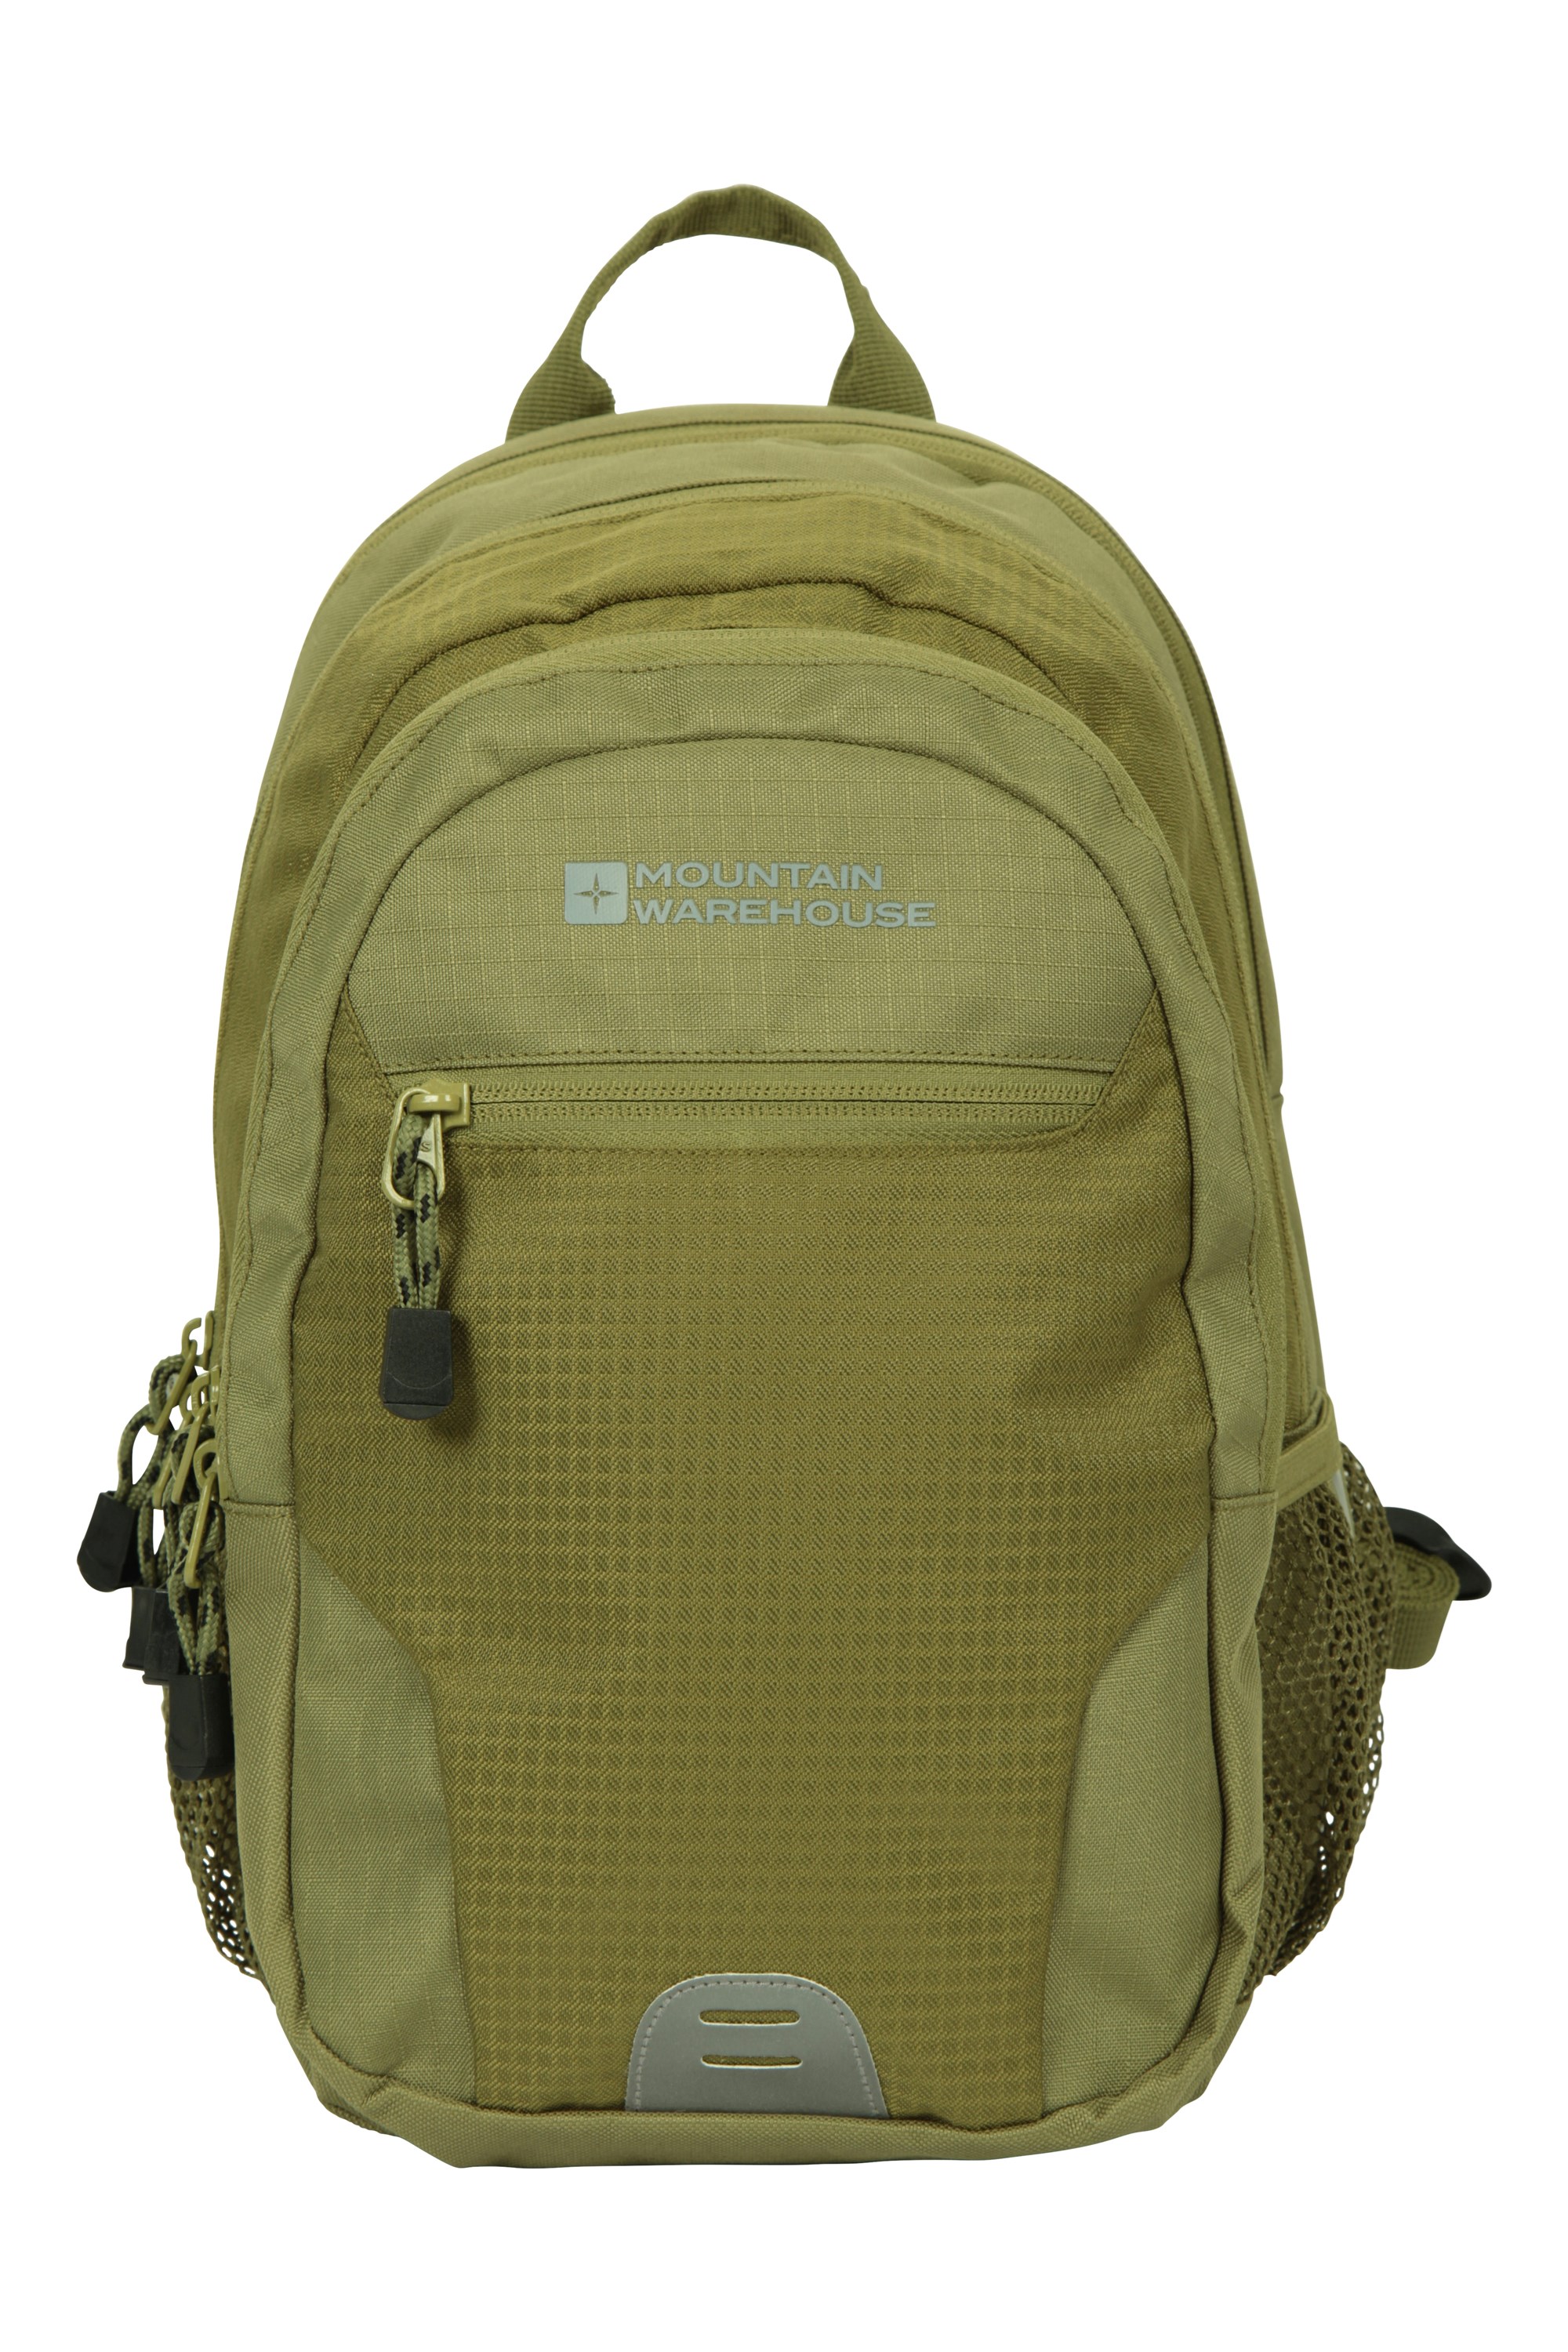 Quest Daysack Travel Rucksack Day Shoulder Work Pack Bag Walking Backpack 12L 